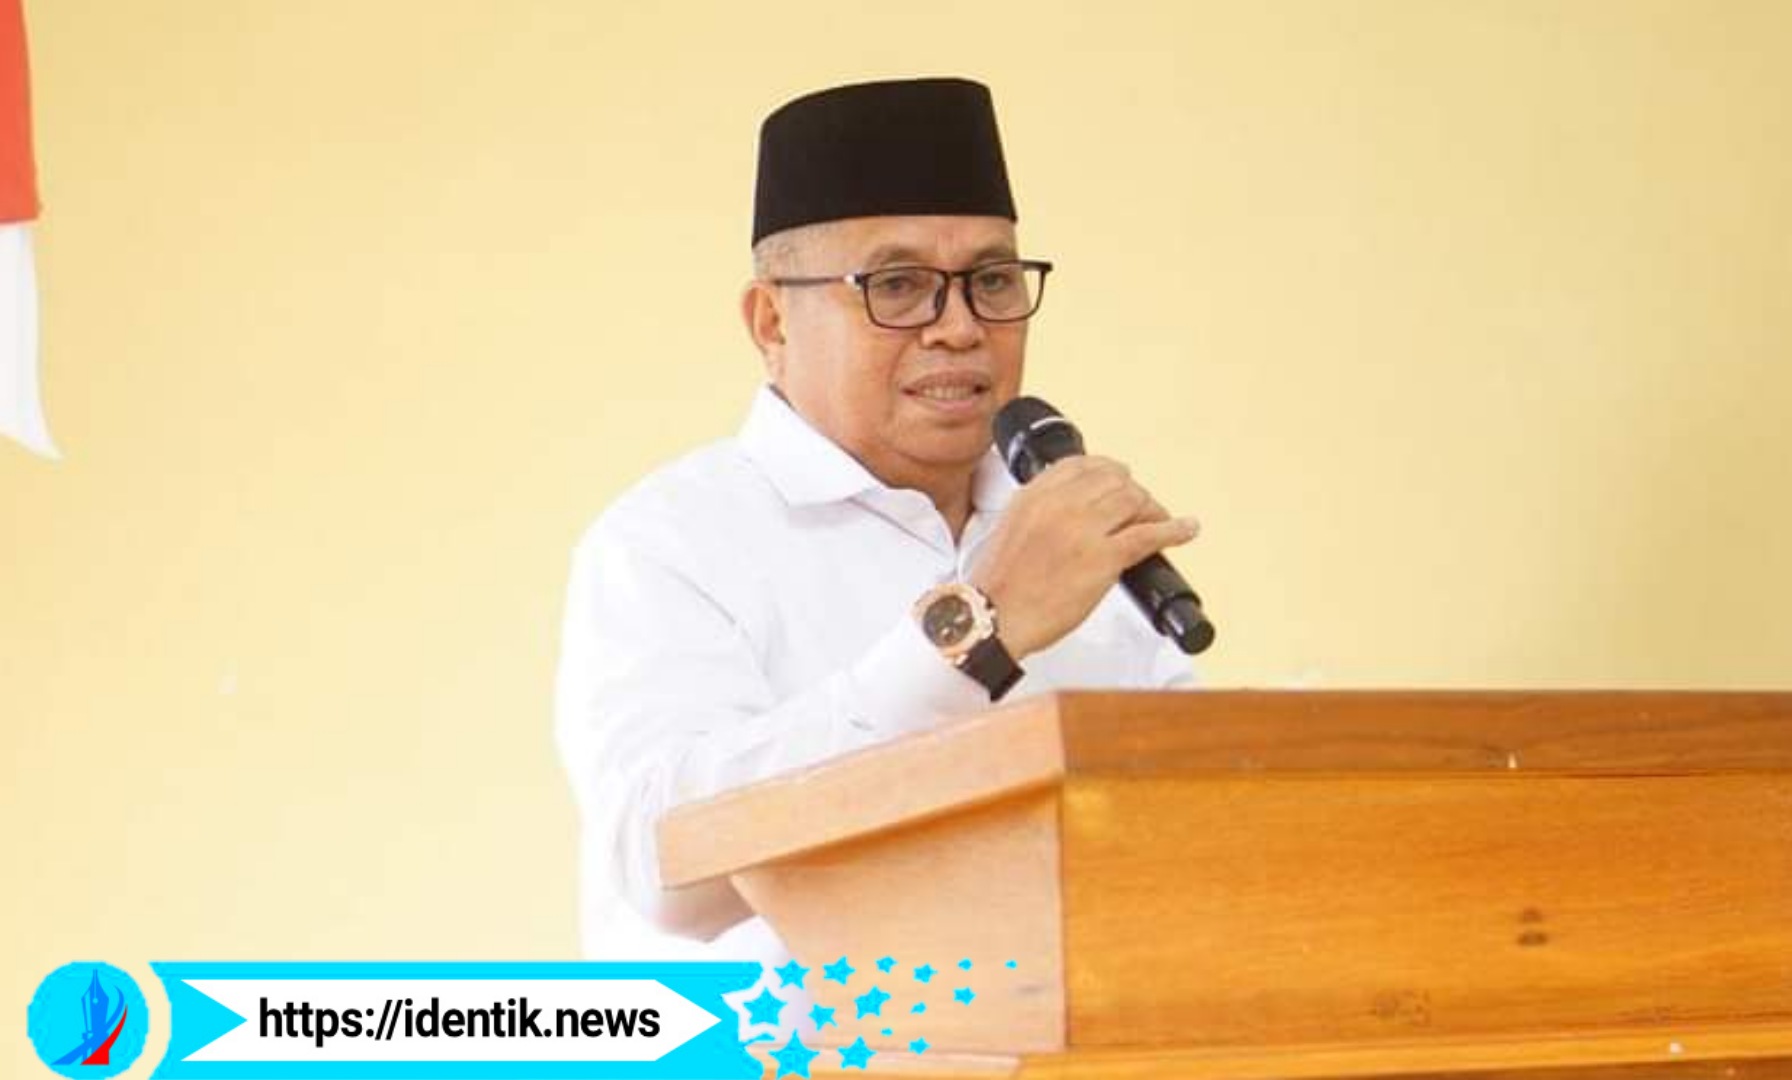 Wakil Bupati Bolmut Amin Lasena menanggapi terkait kriteria fakir miskin oleh Kemensos yang membuat anggota DPRD Bolmut heran